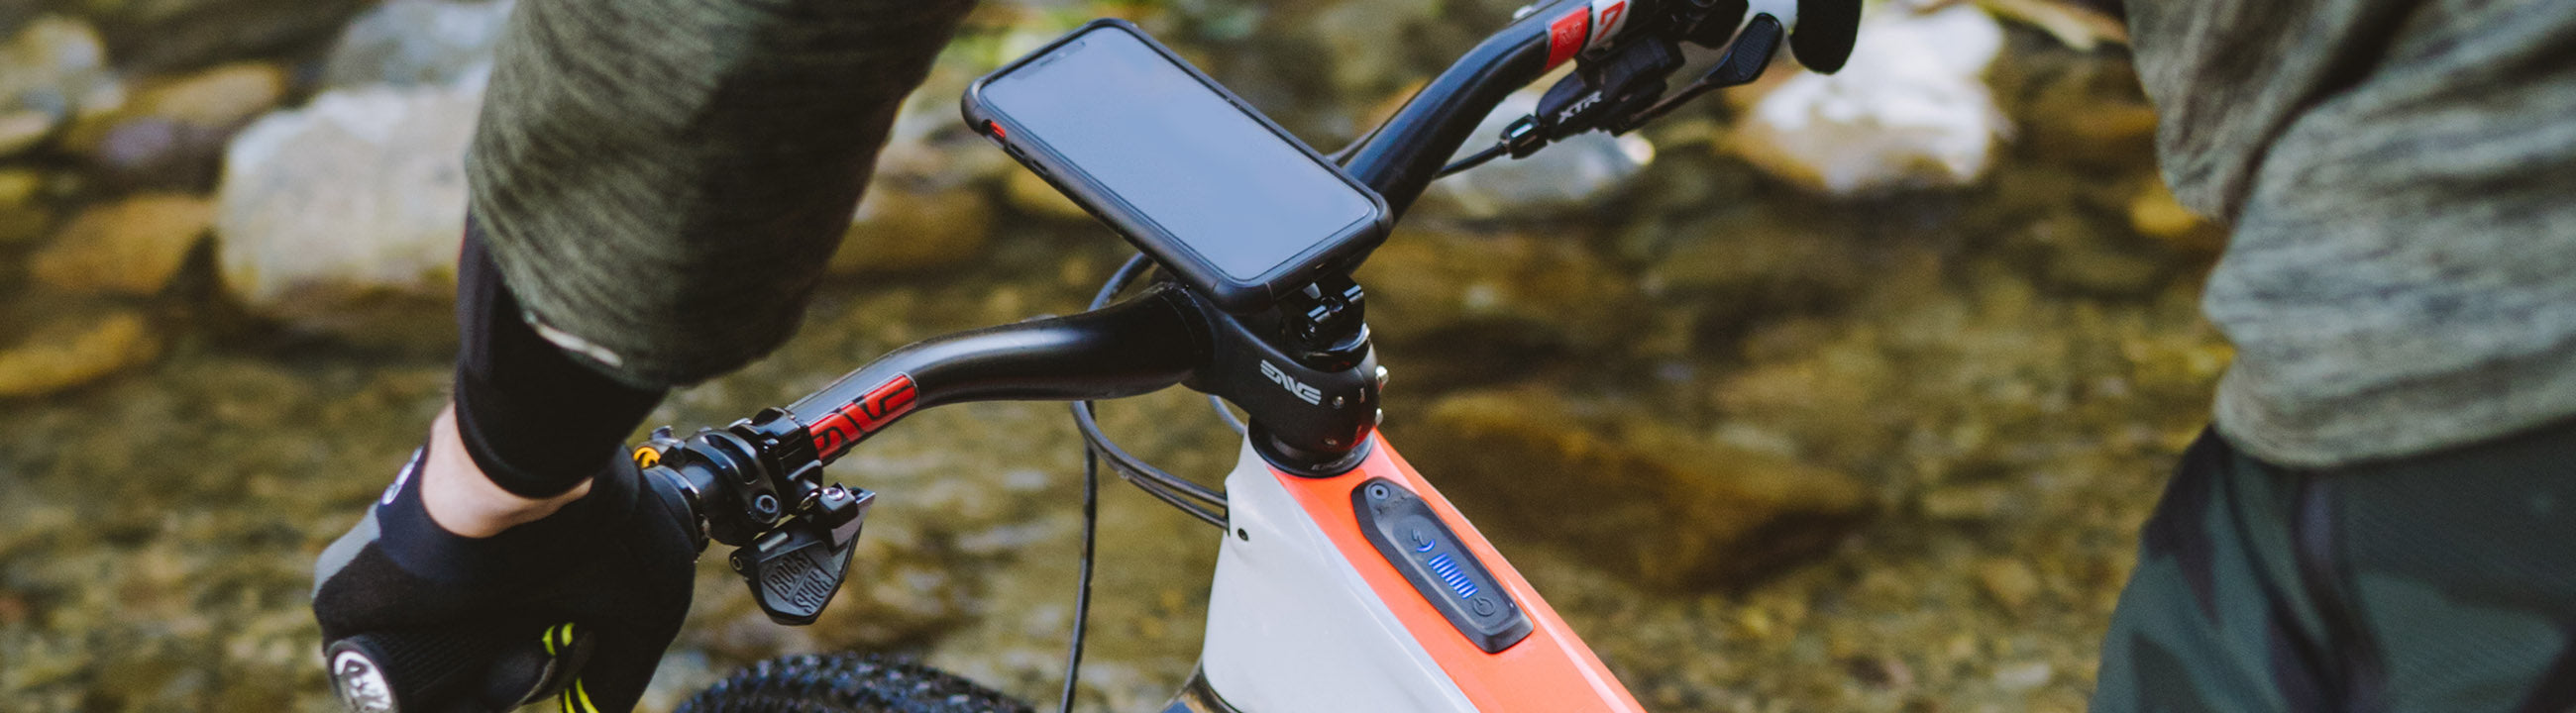 Smartphone-halter für fahrrad, Telefonhalterungen für Fahrräder, Fahrräder  und Zubehör